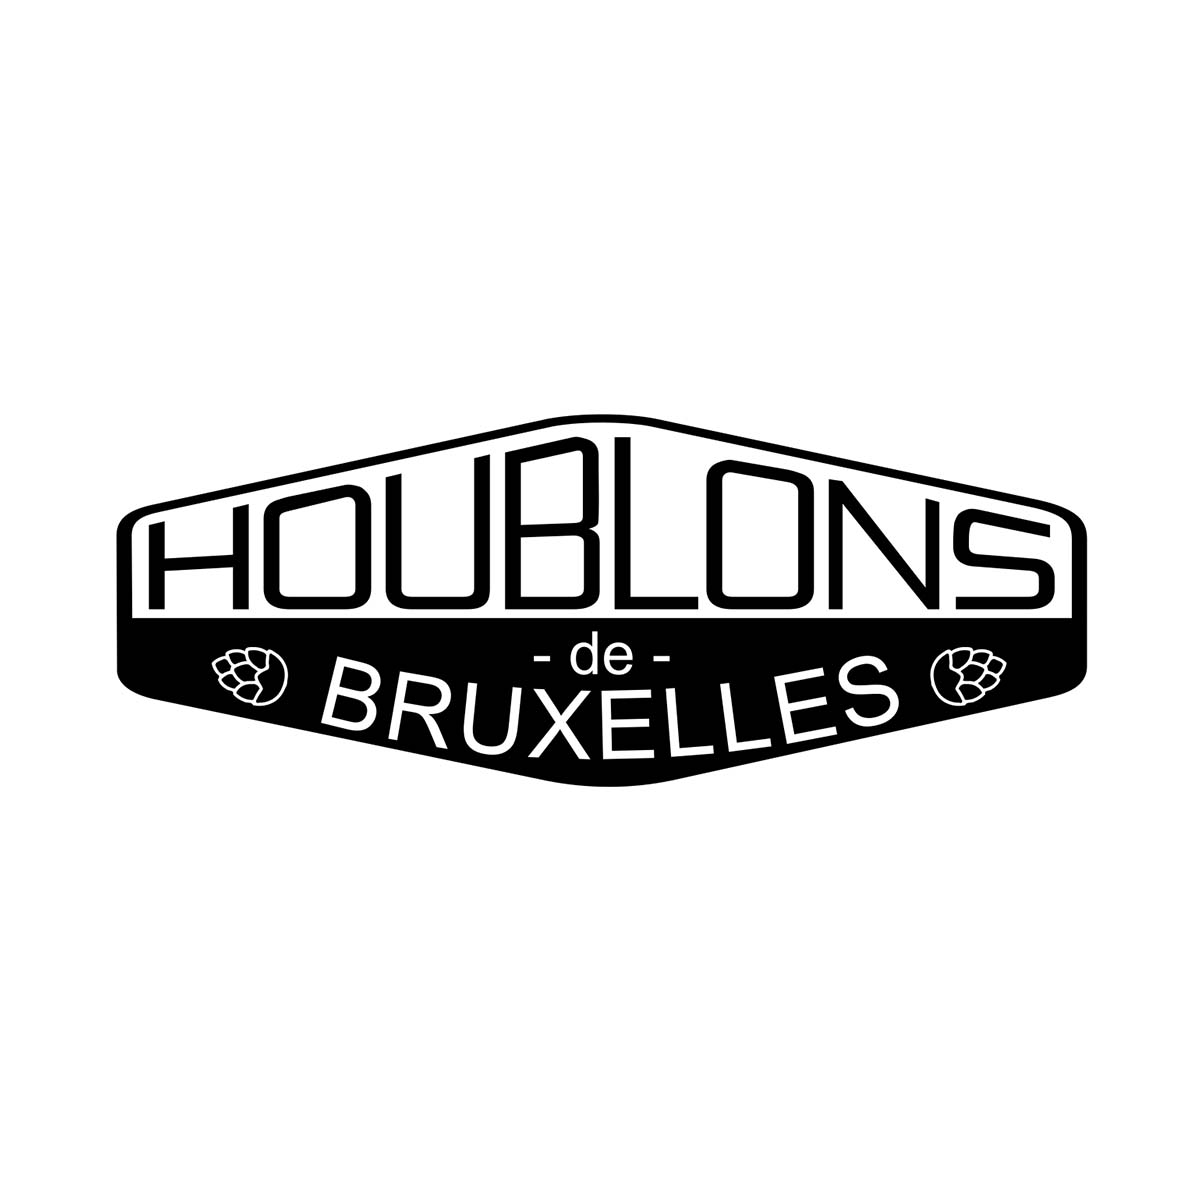 Brasserie Houblons de Bruxelles